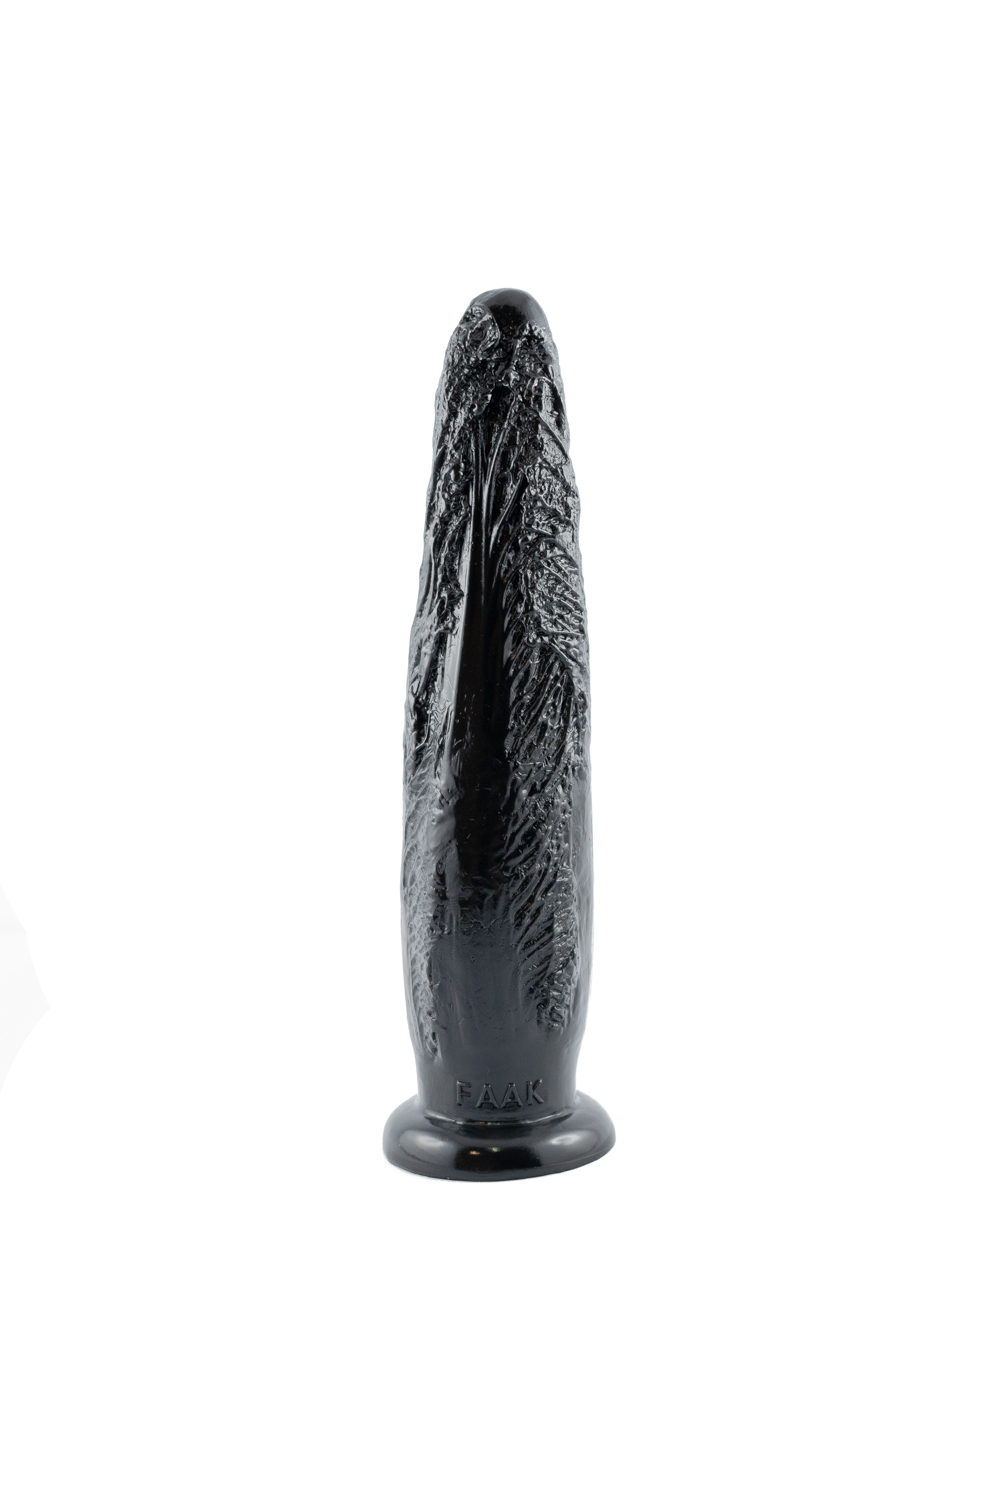 Секс-игрушка Cabbage Cock Black, 27х6 смНет в наличии